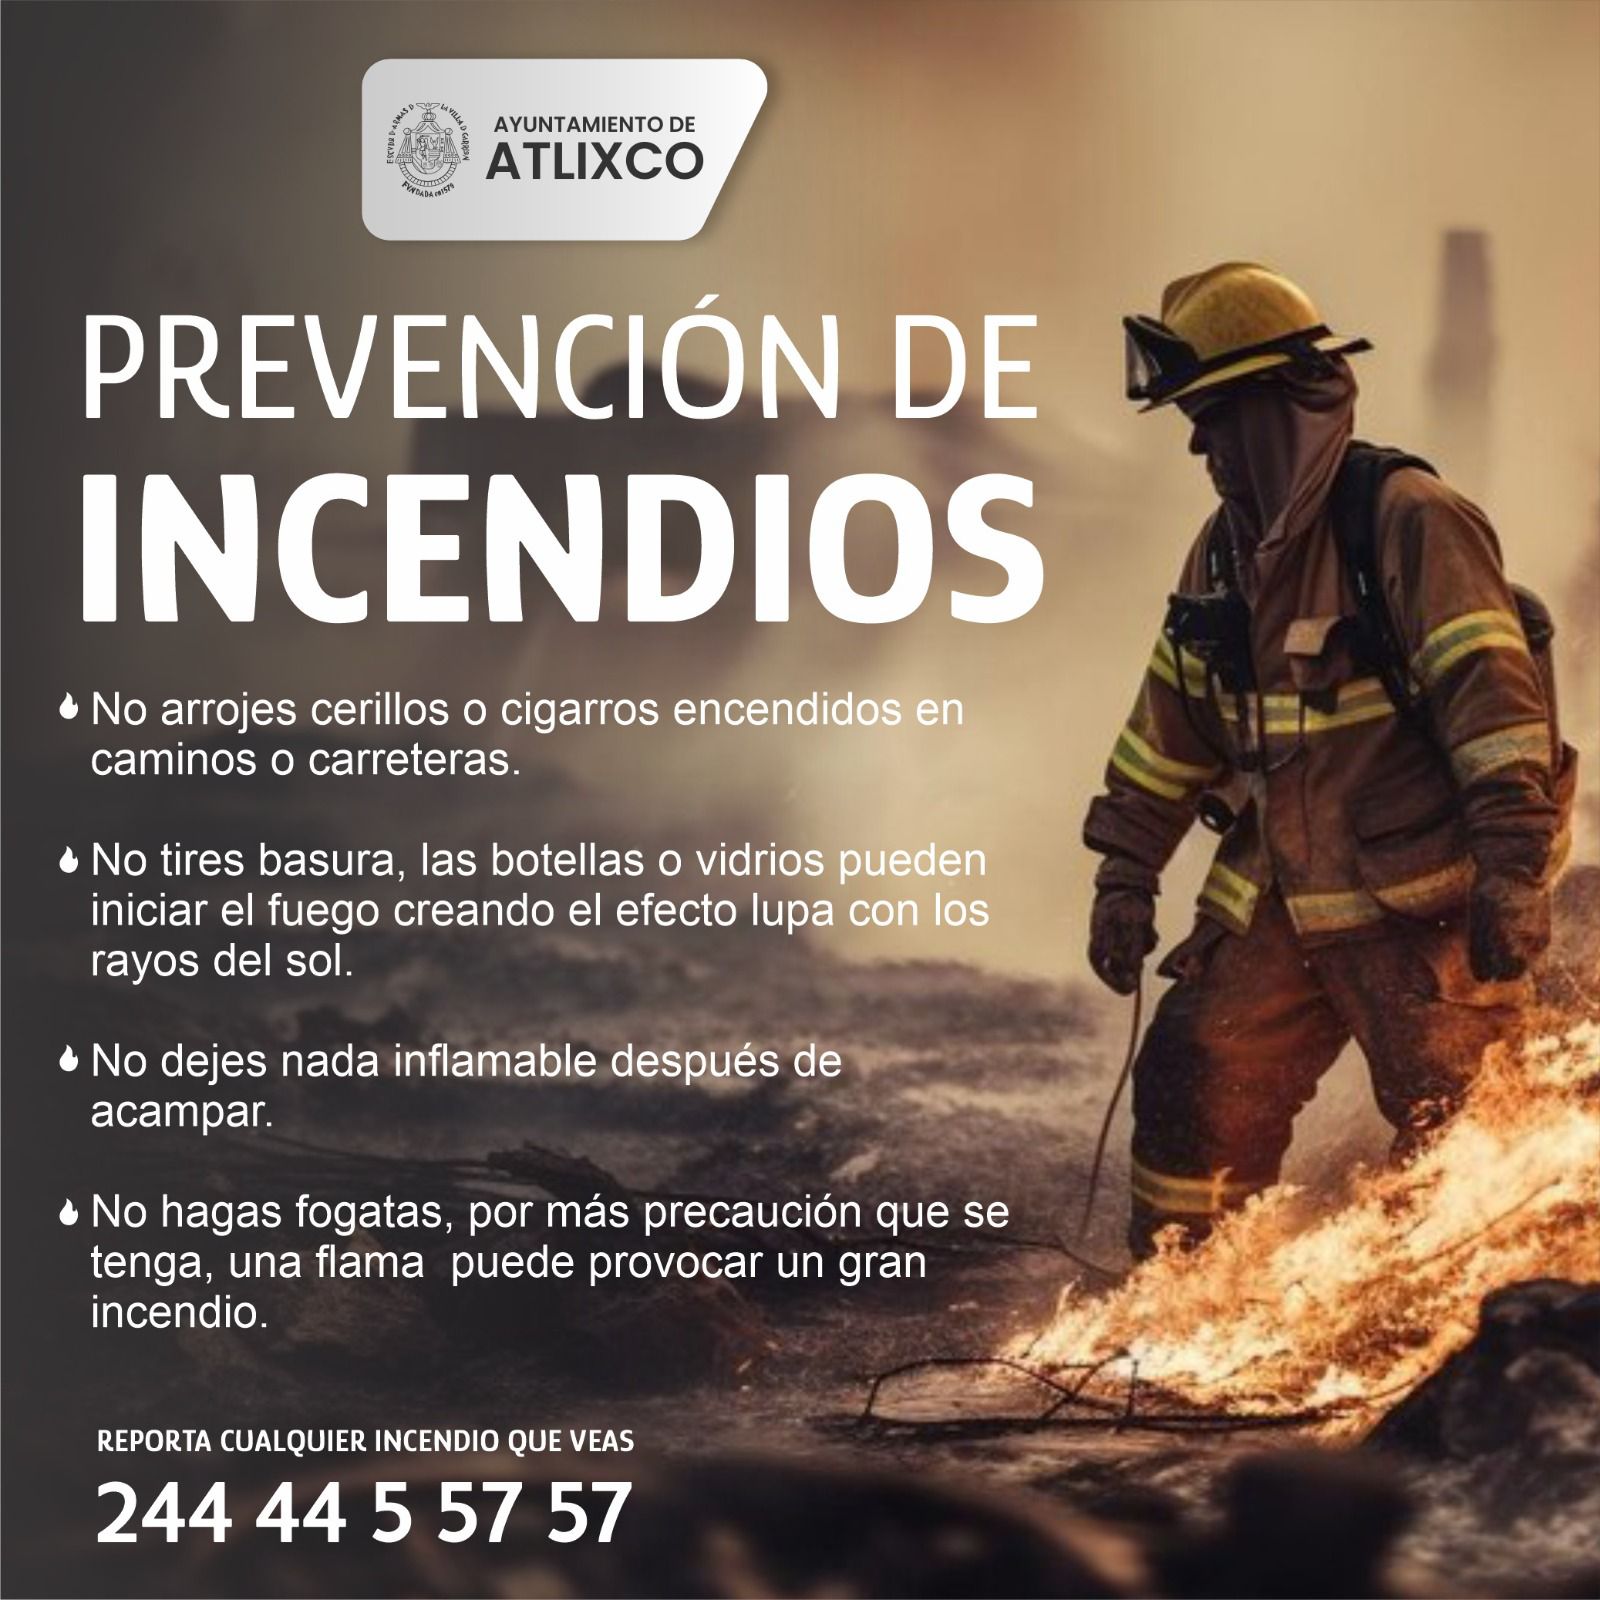 ¡Cuida Atlixco! evita incendios forestales con estas recomendaciones